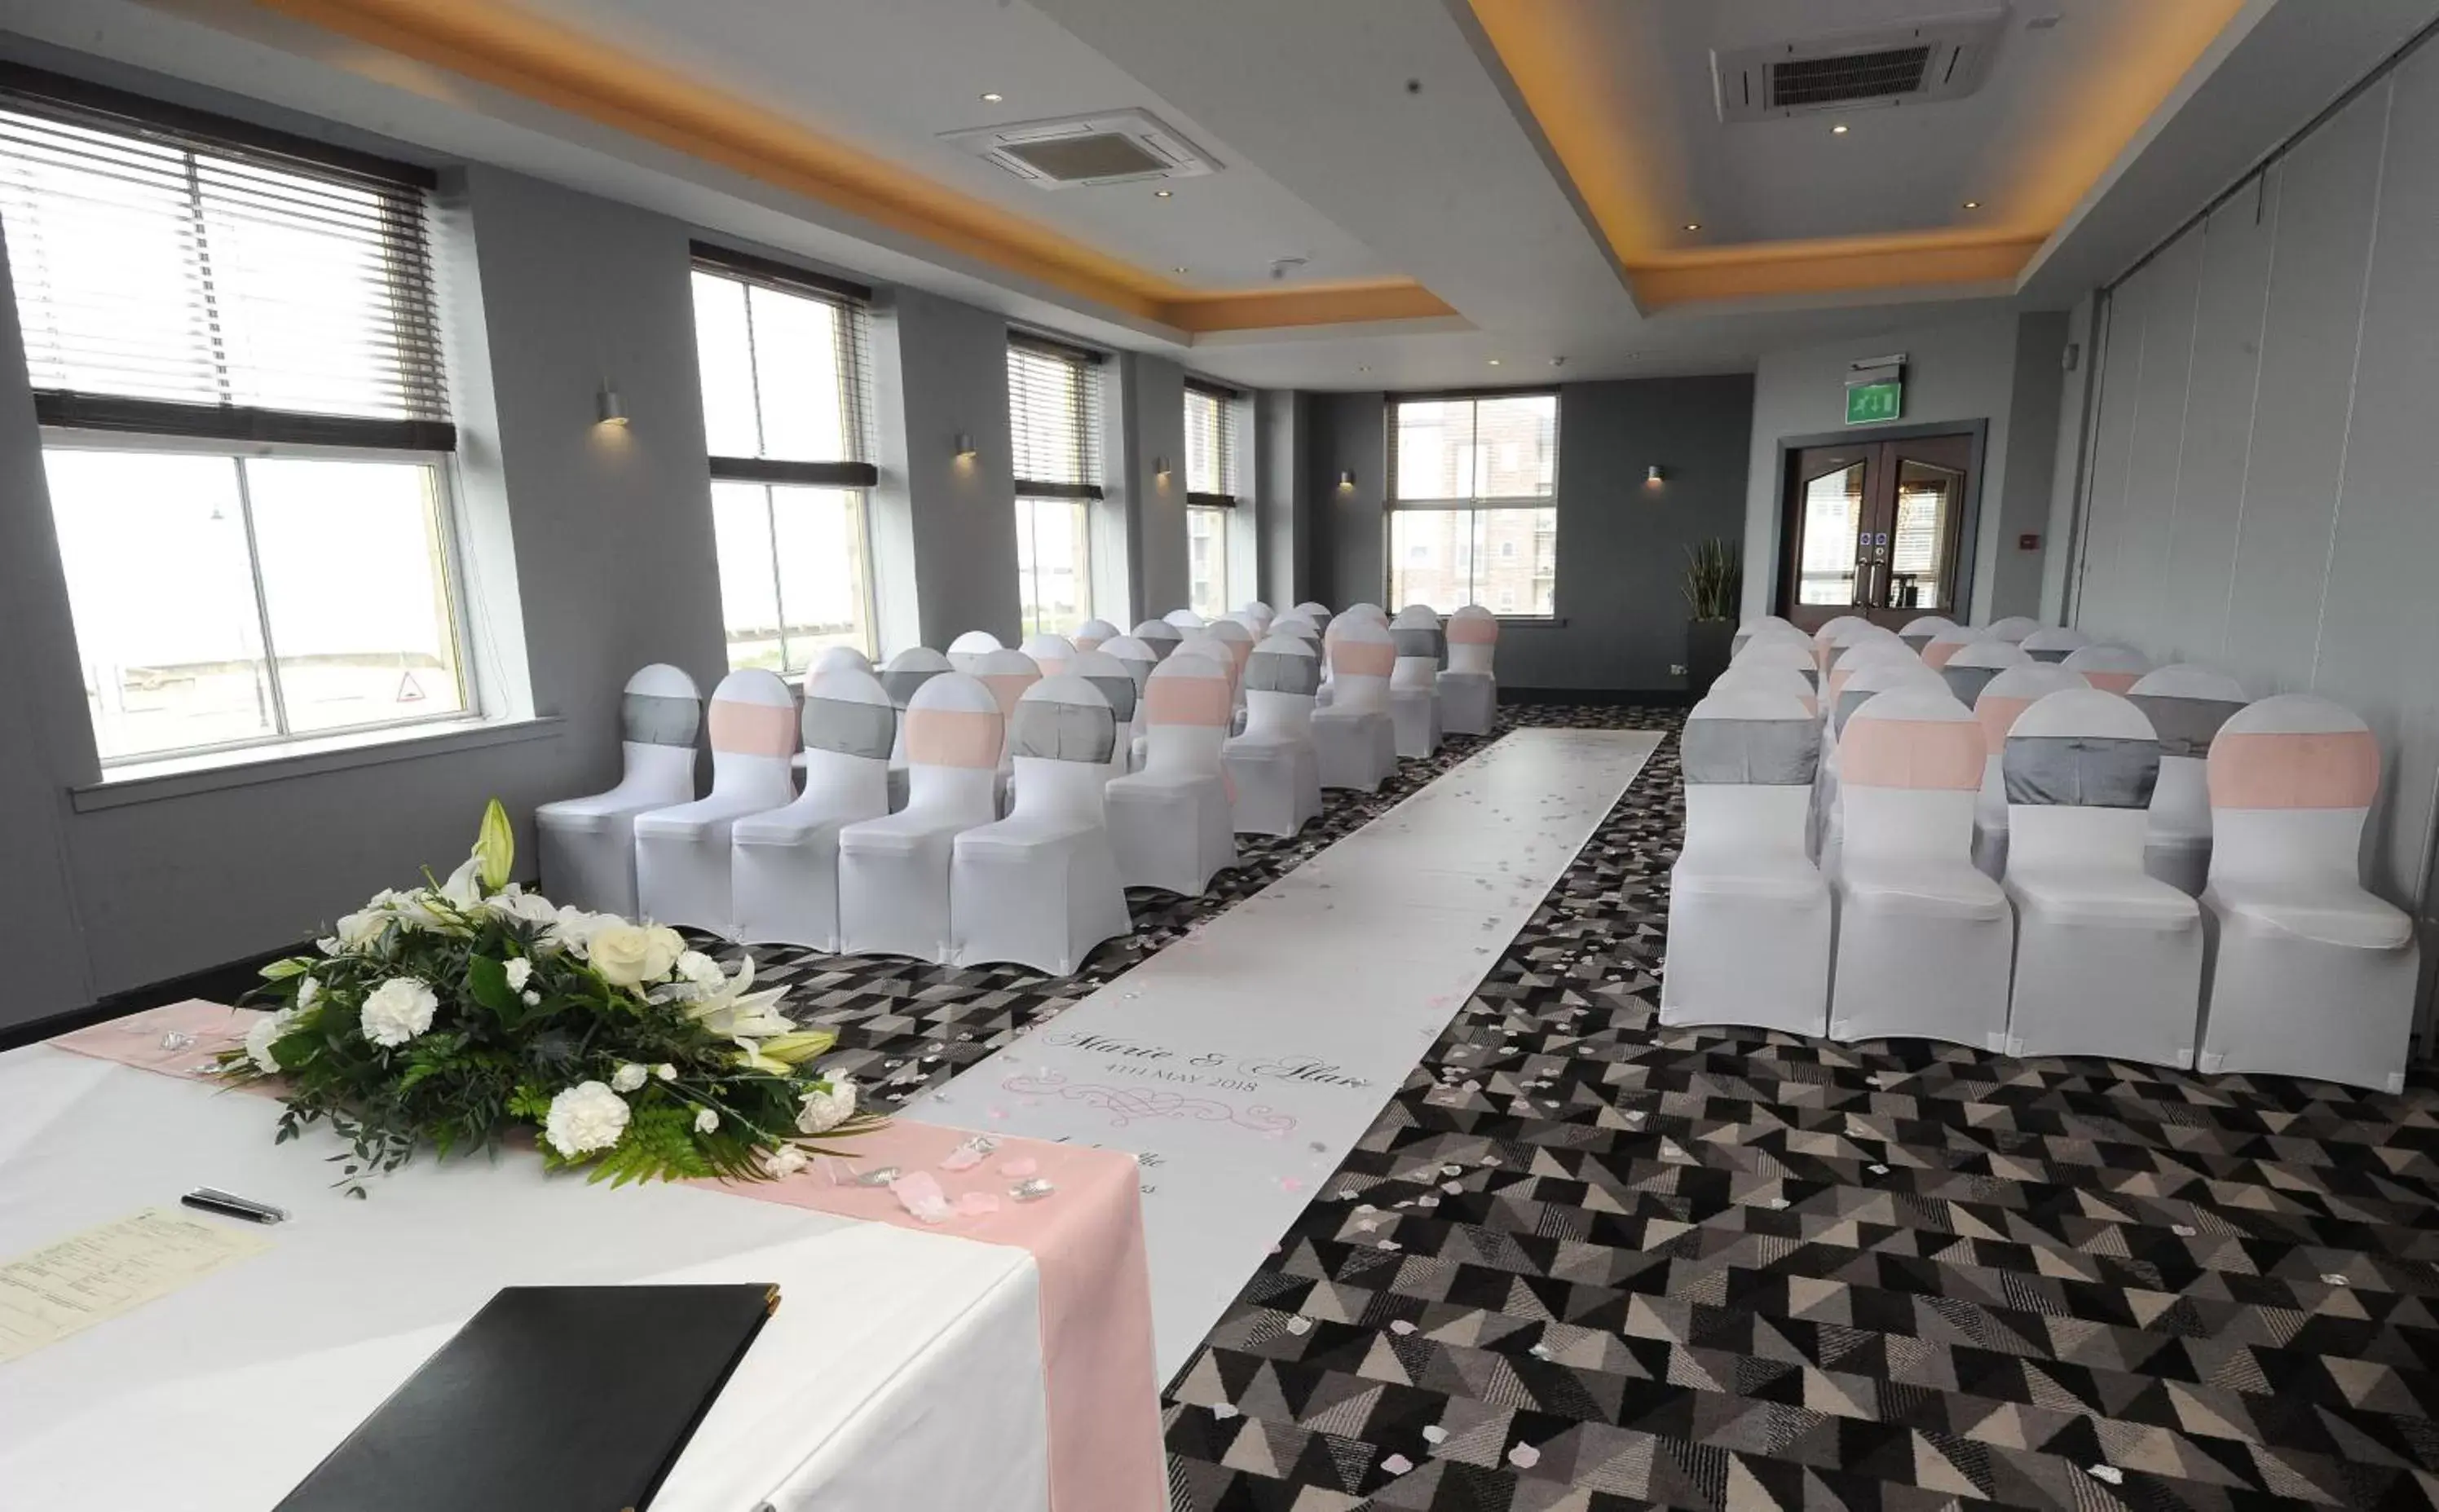 Banquet/Function facilities, Banquet Facilities in Horizon Hotel